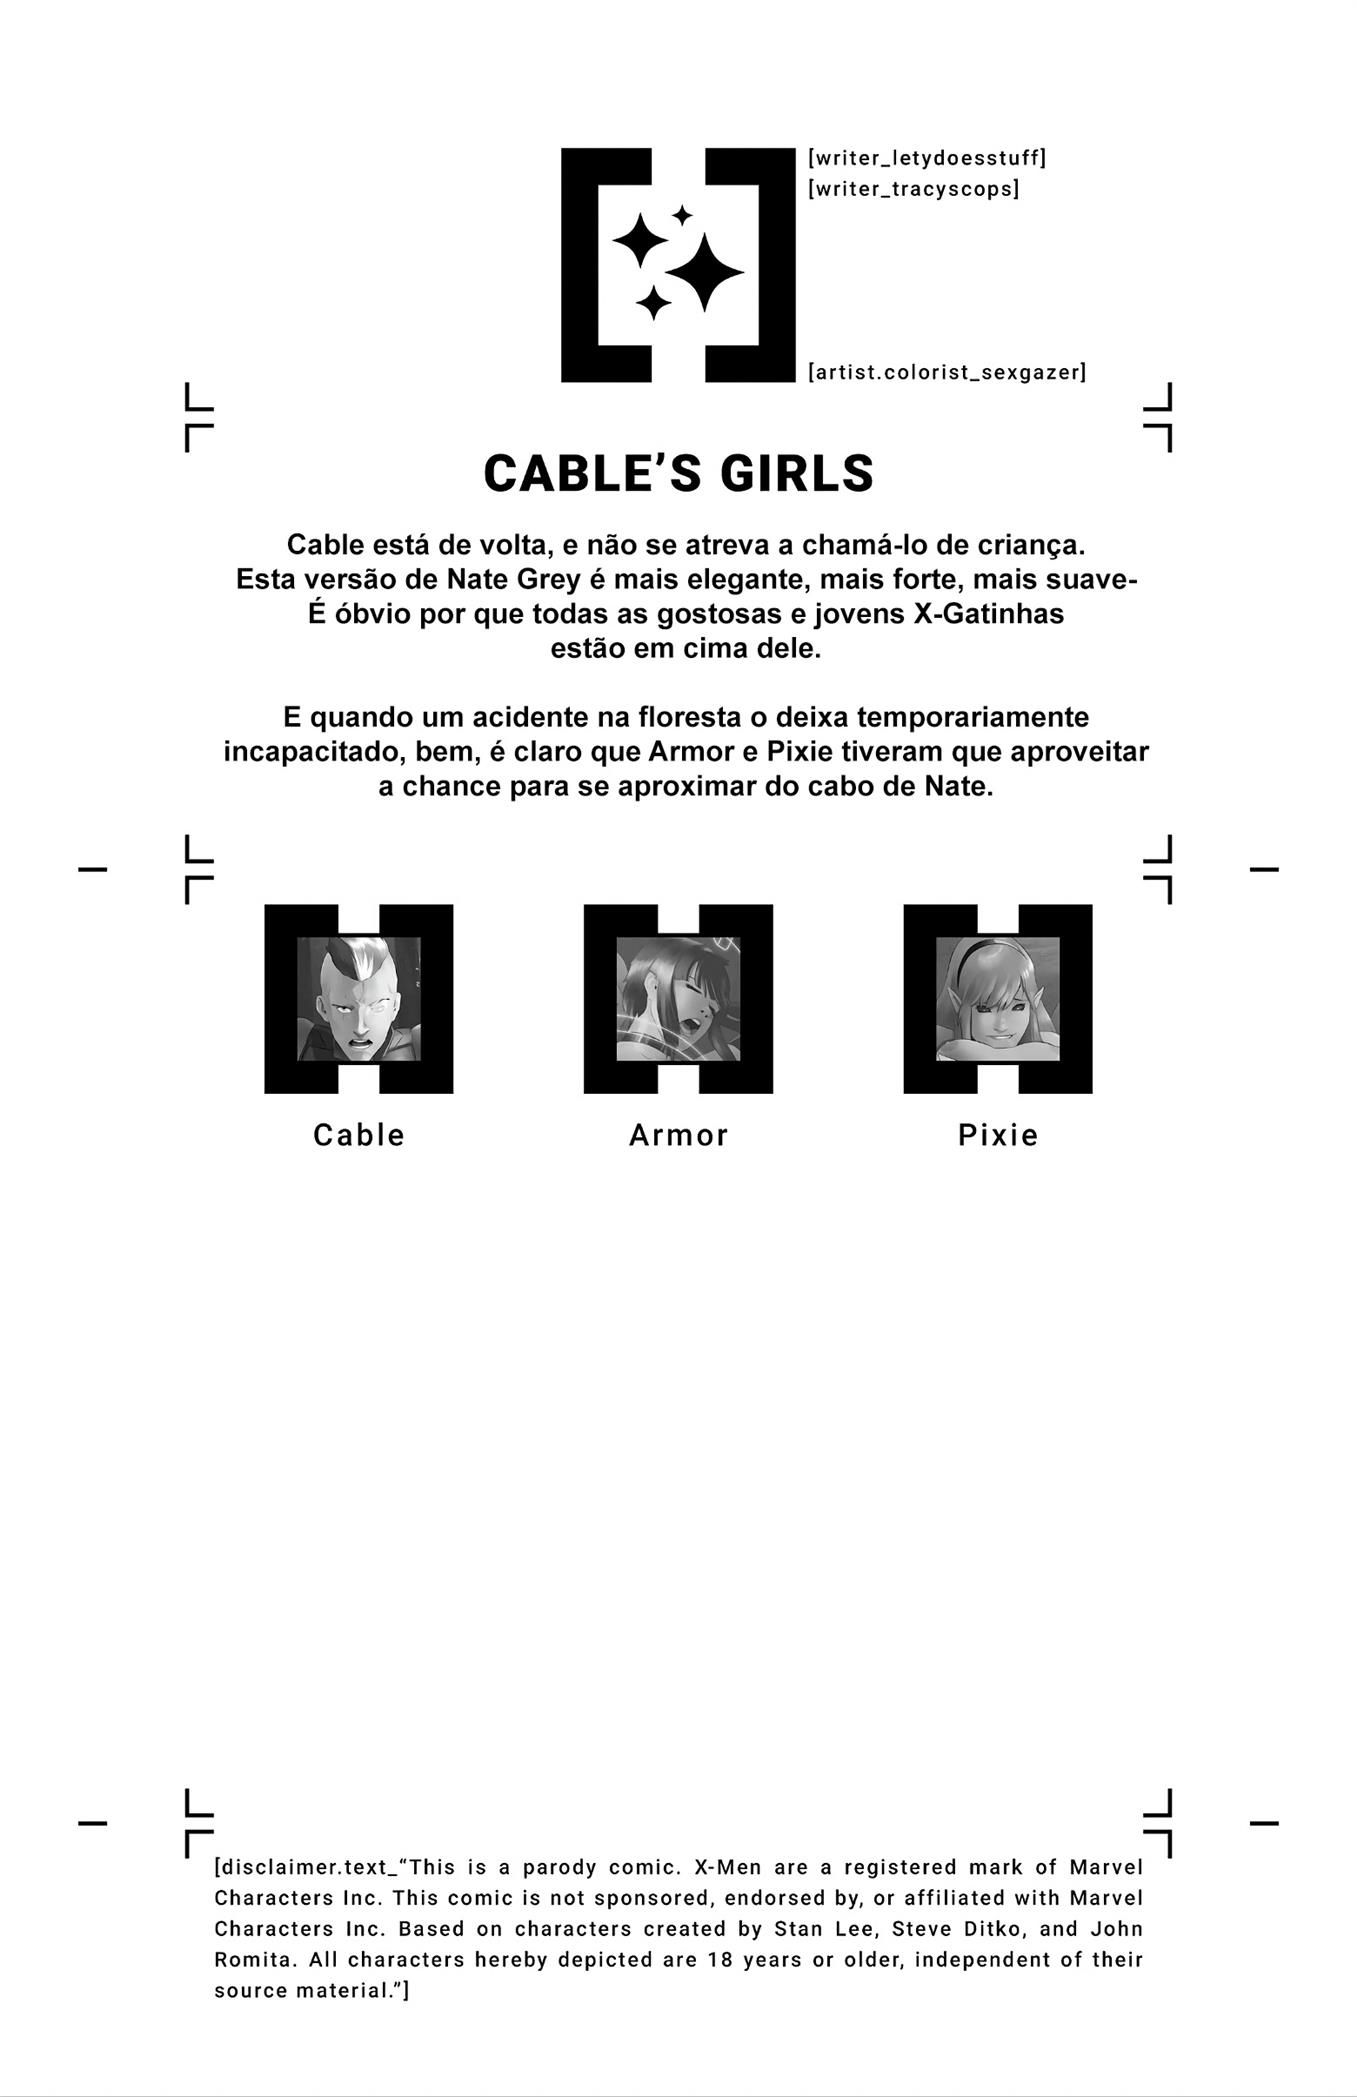 Casa do XXX – As garotas de Cable (2)